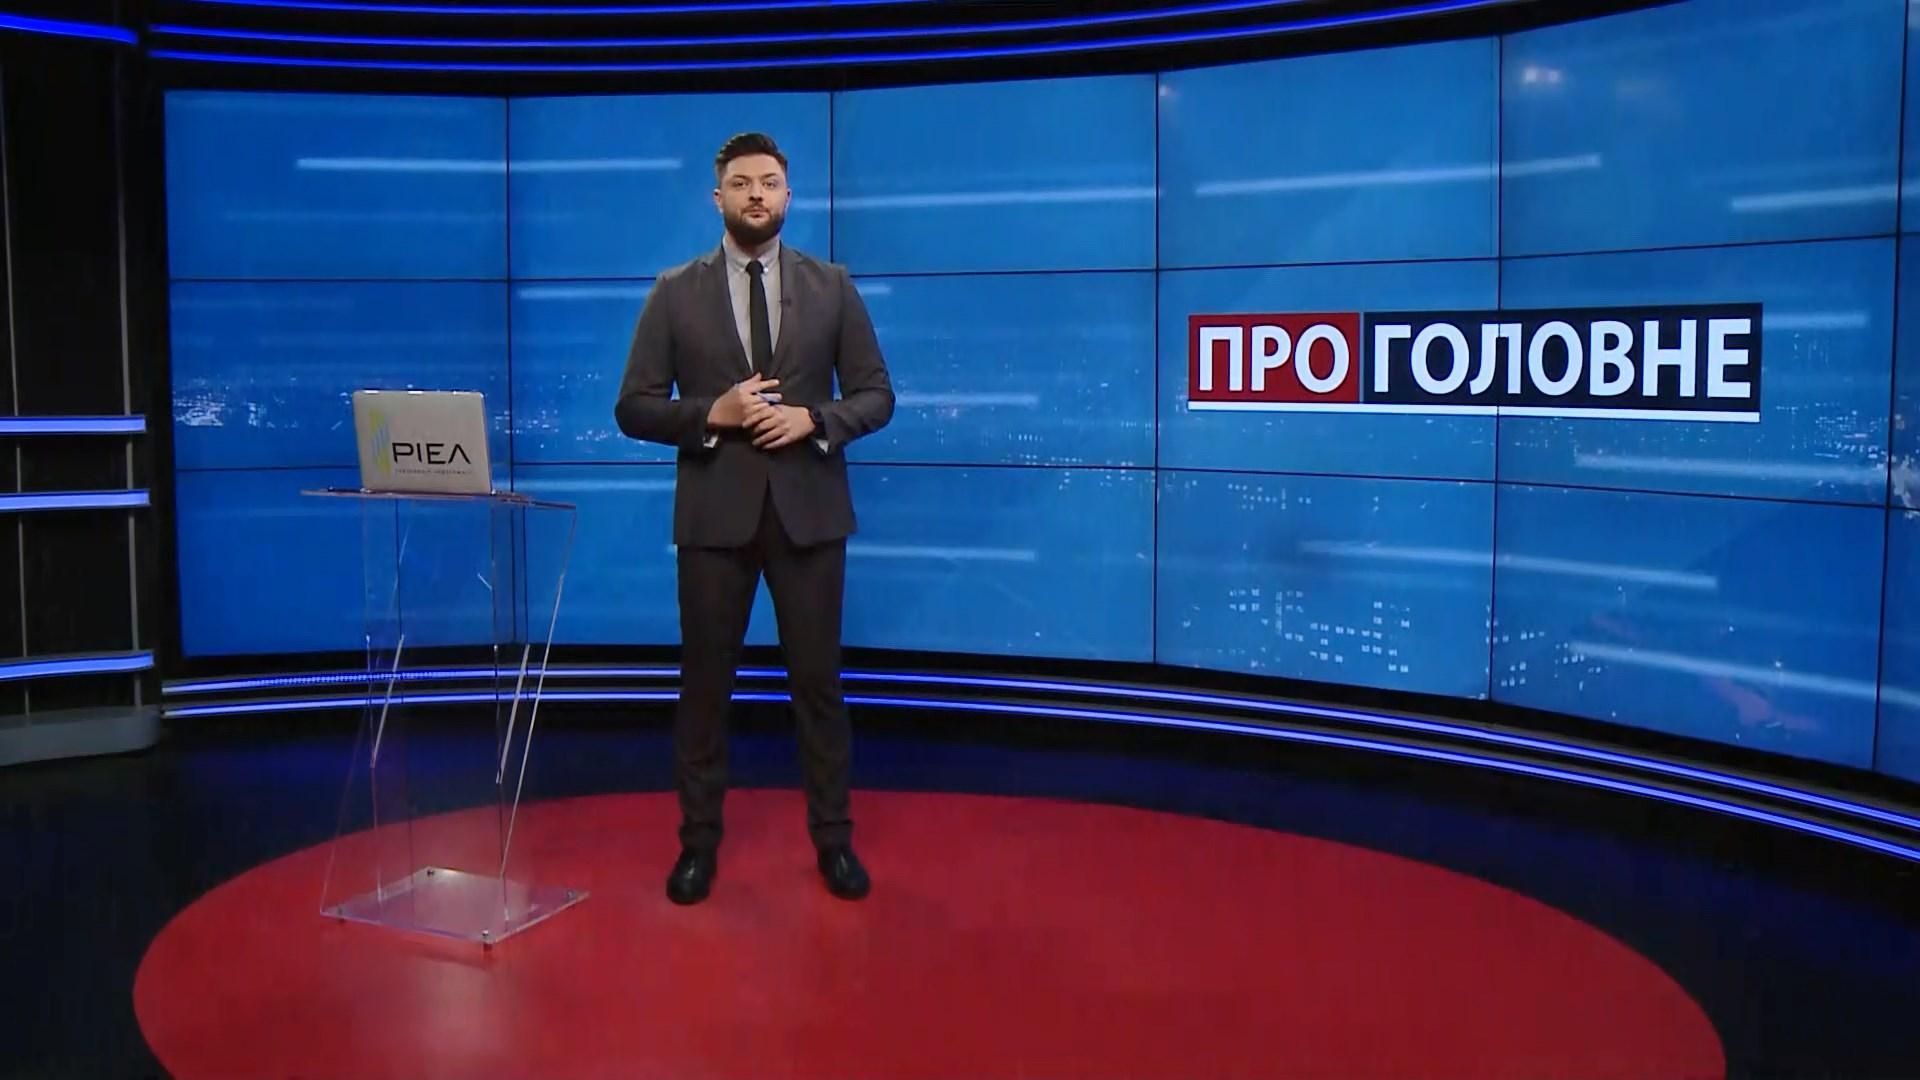 Про головне: Самоізоляція Путіна. Нові правила карантину в Україні - 24 Канал